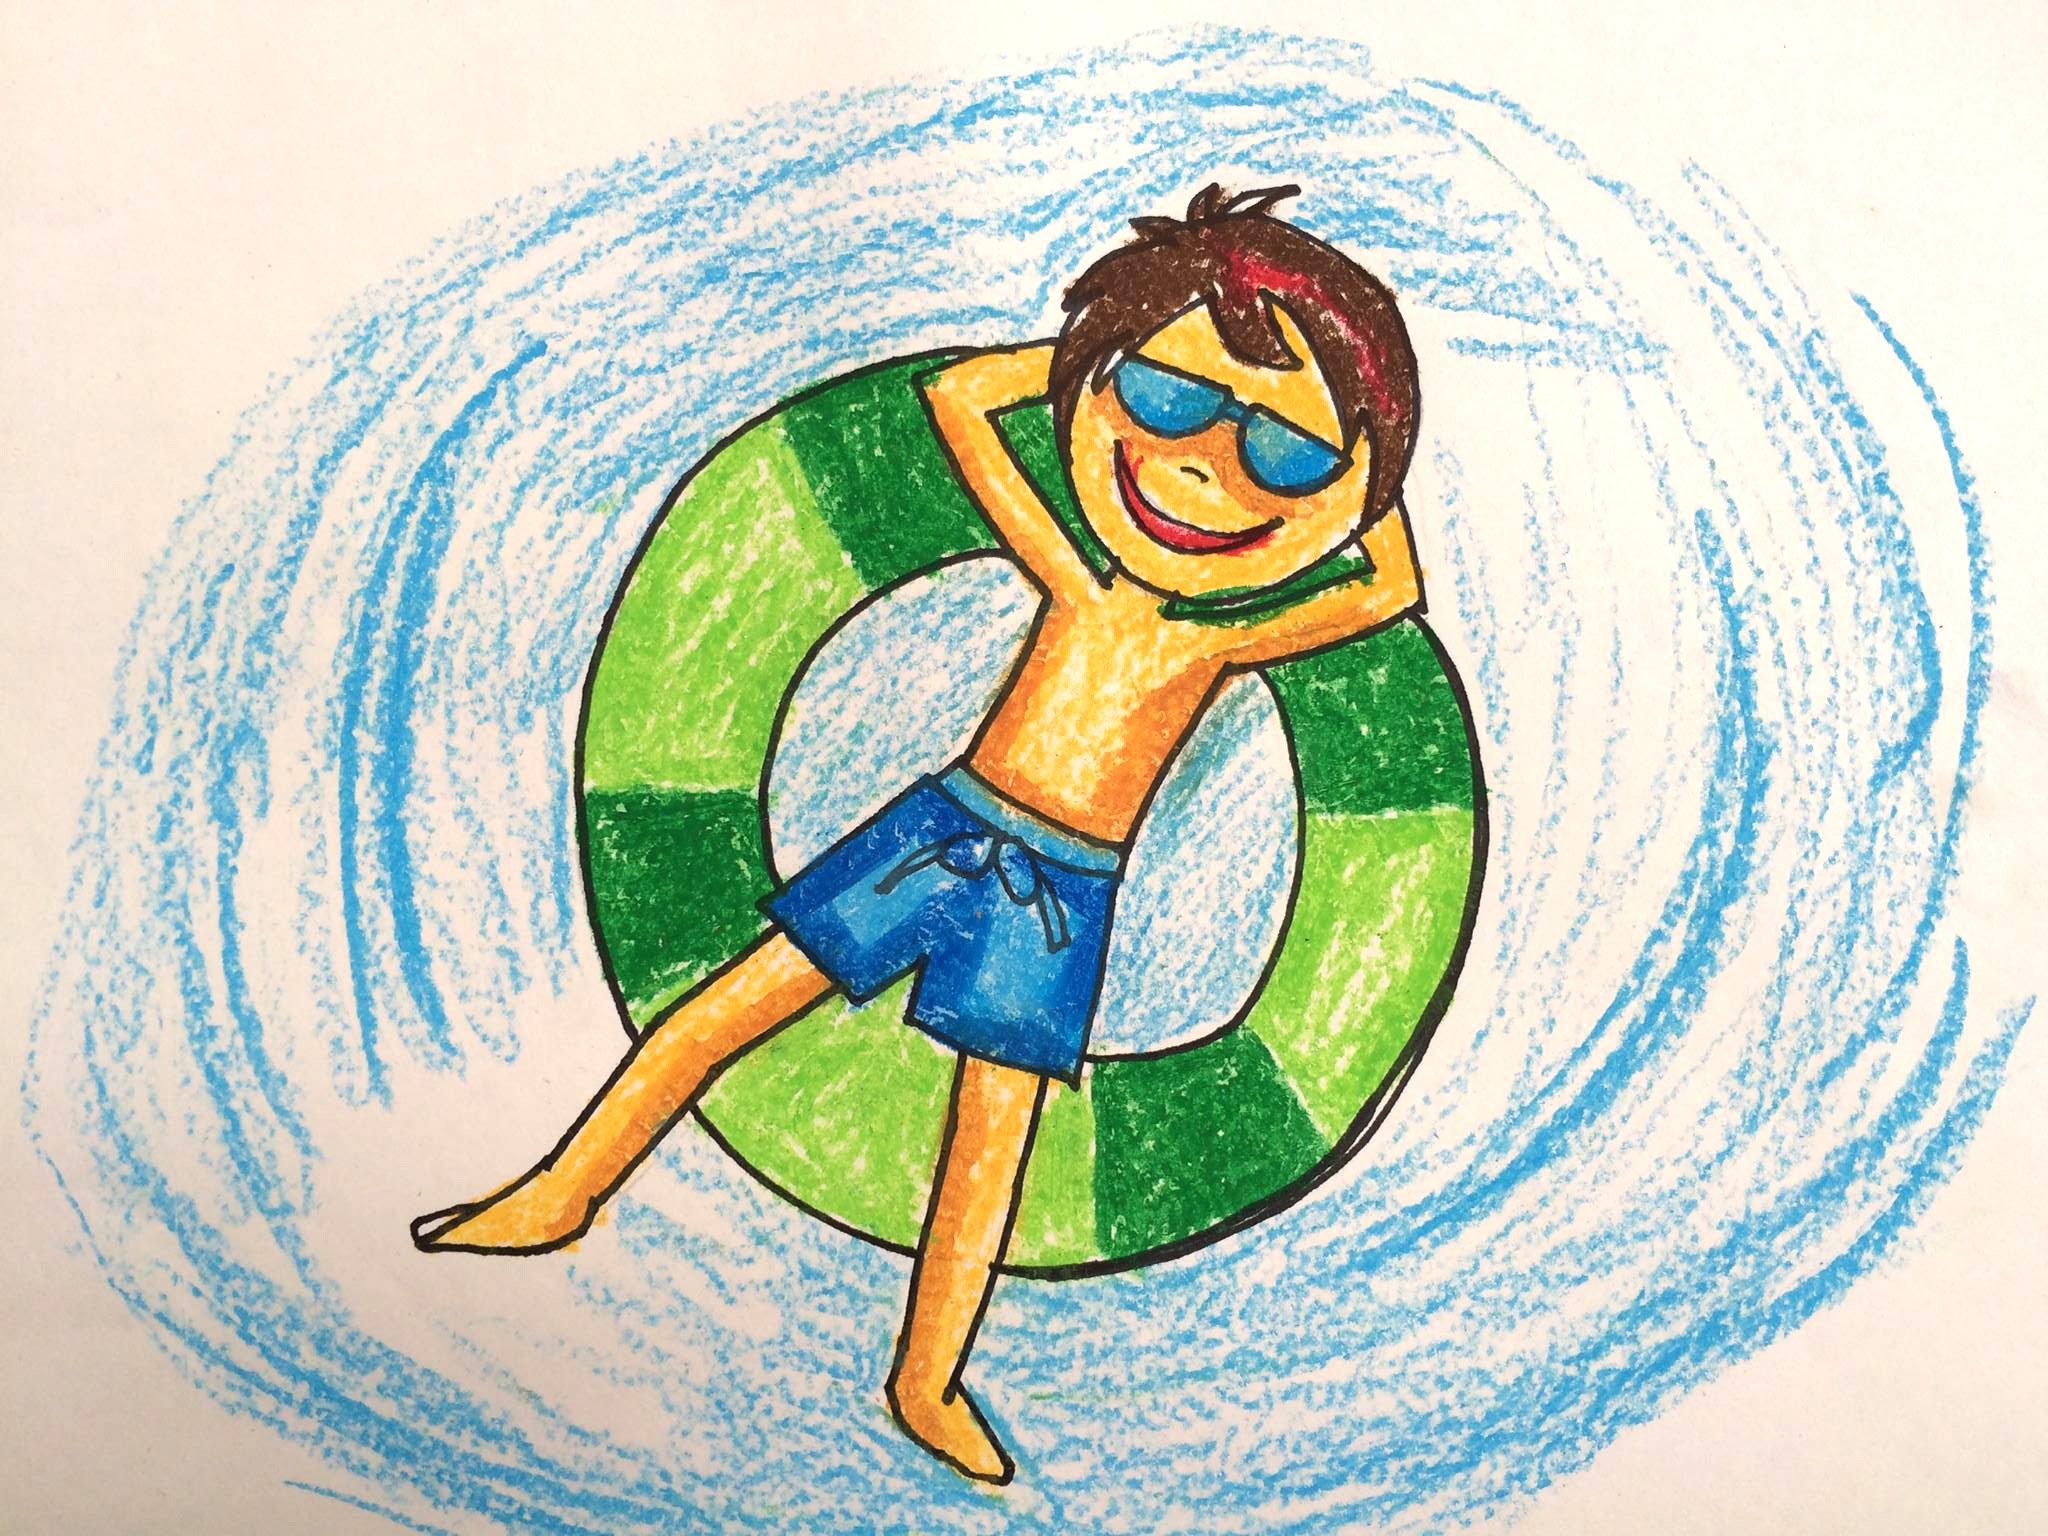 2048x1536 Painting summer for kids | How to draw swimming pool fun | BÃ© táº­p váº½ bá» bÆ¡i  2 | Art for kids - YouTube